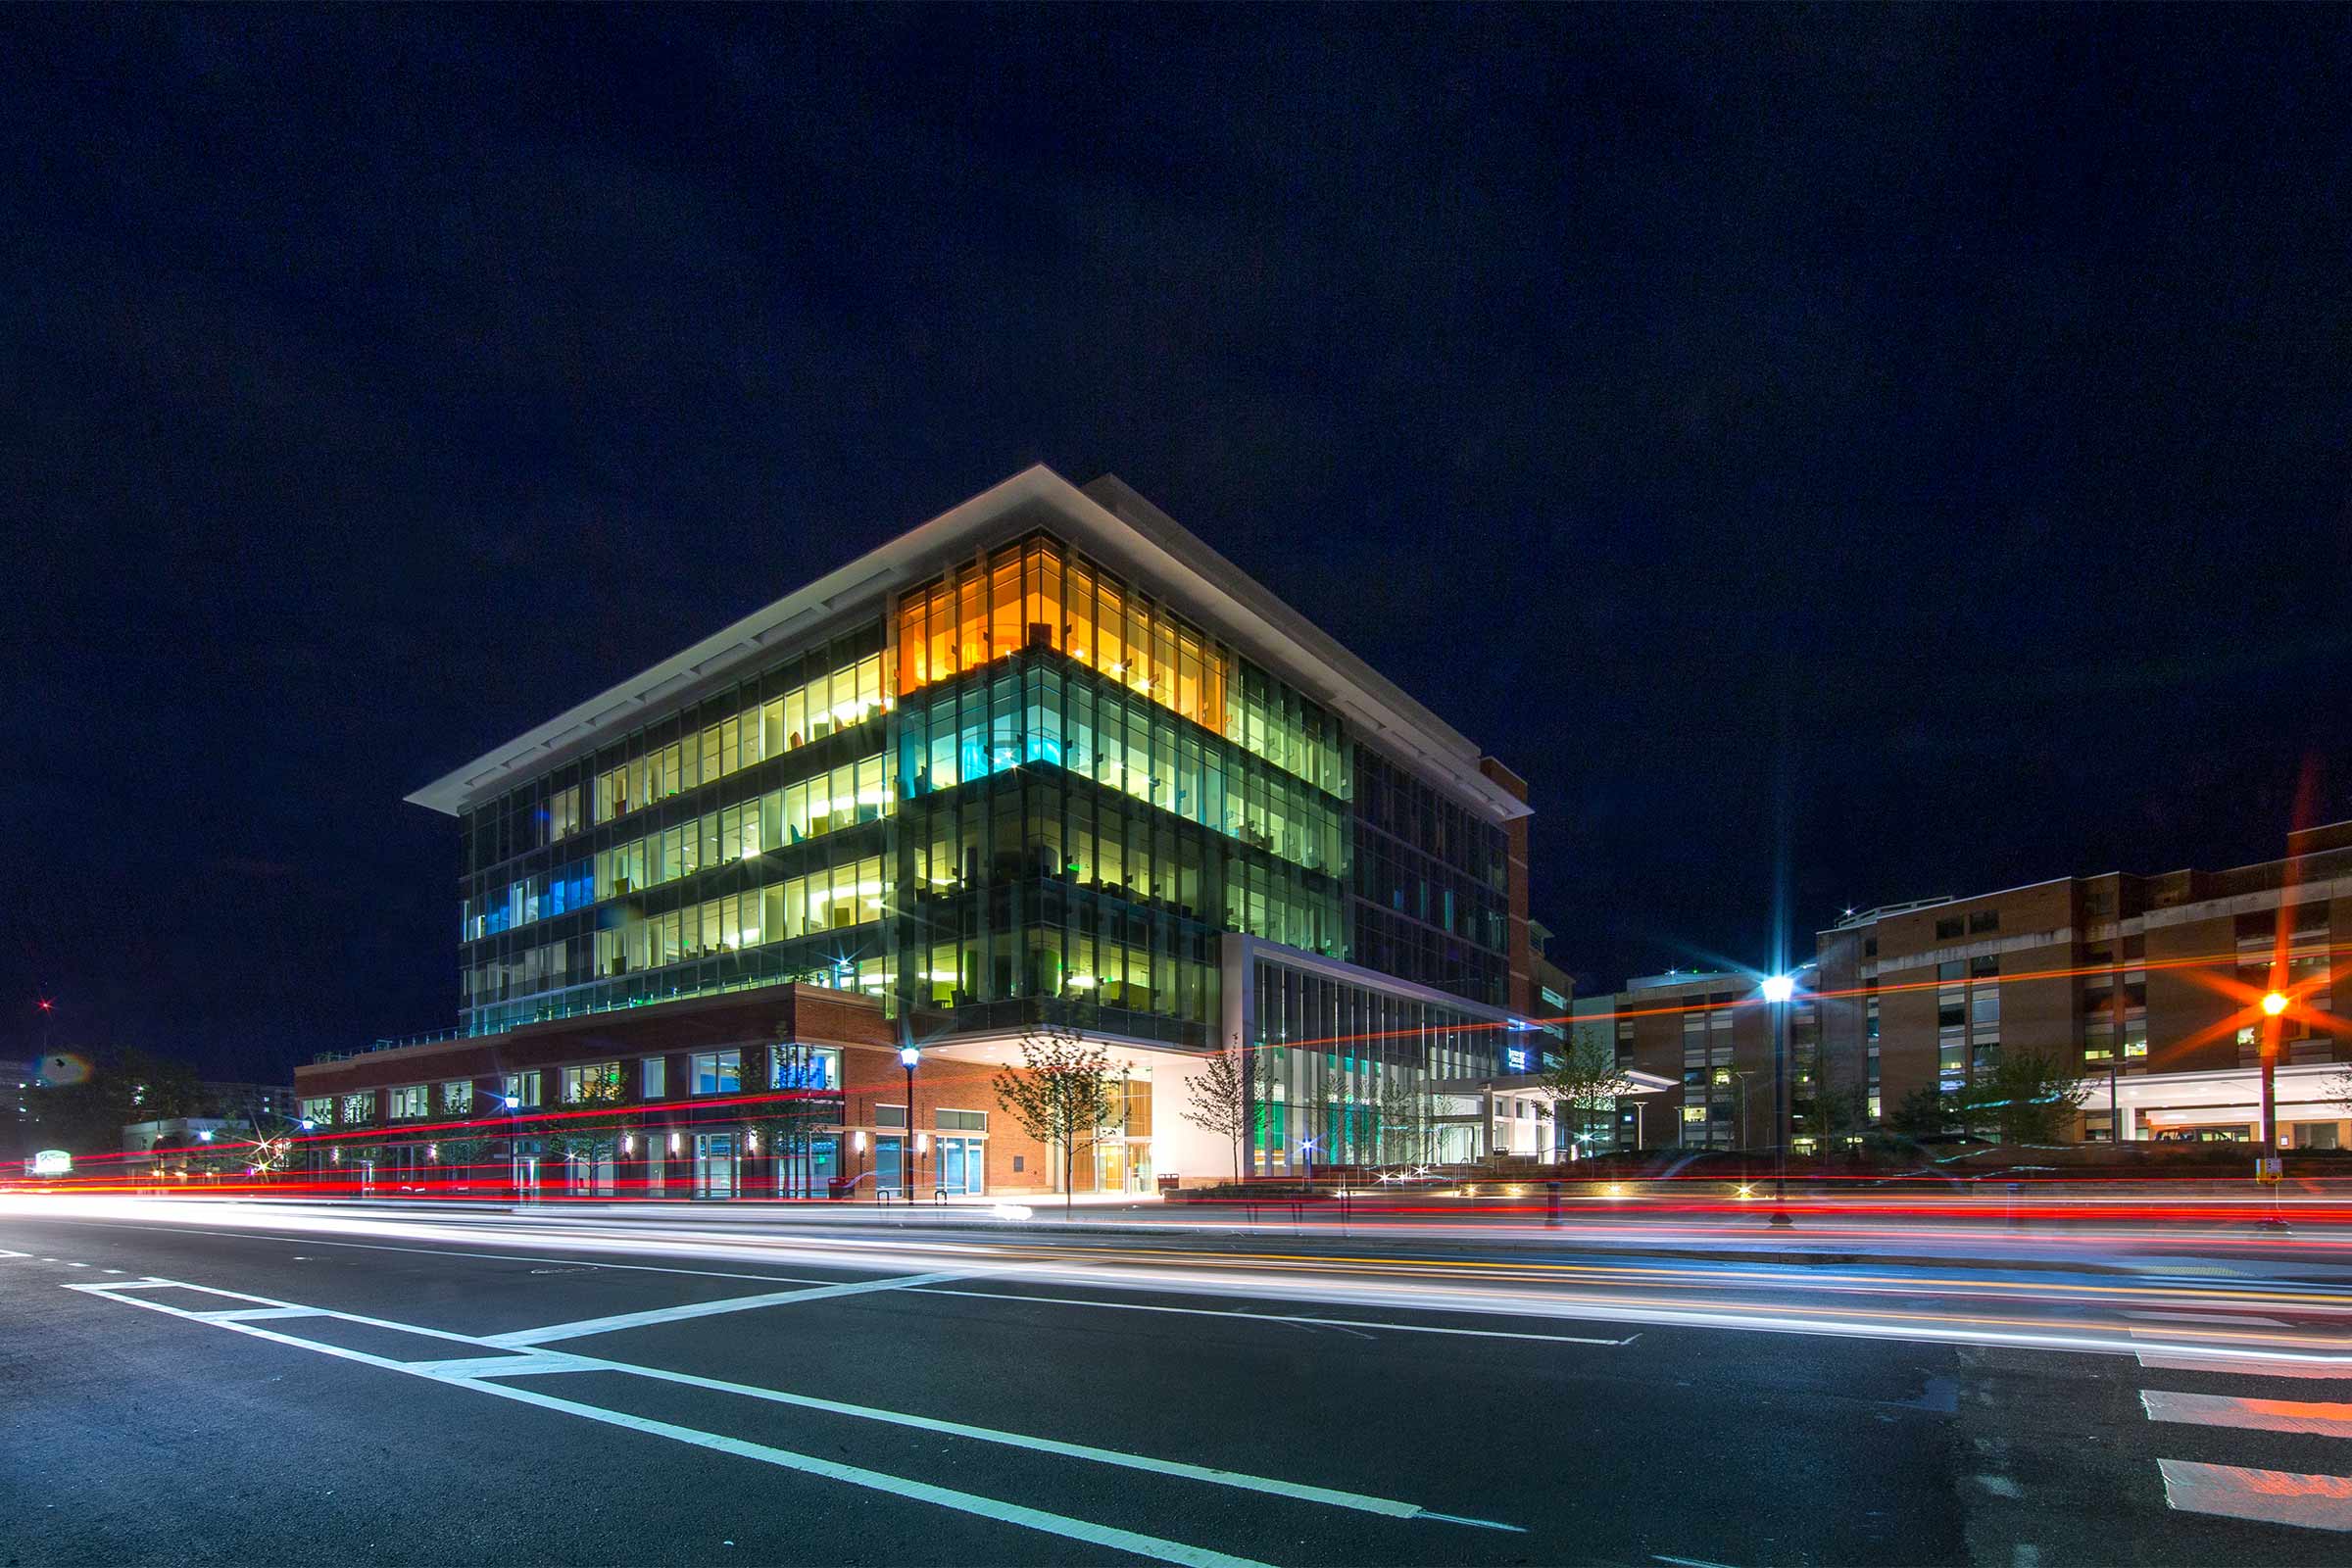 Night shot of the UVA Children's hospital 